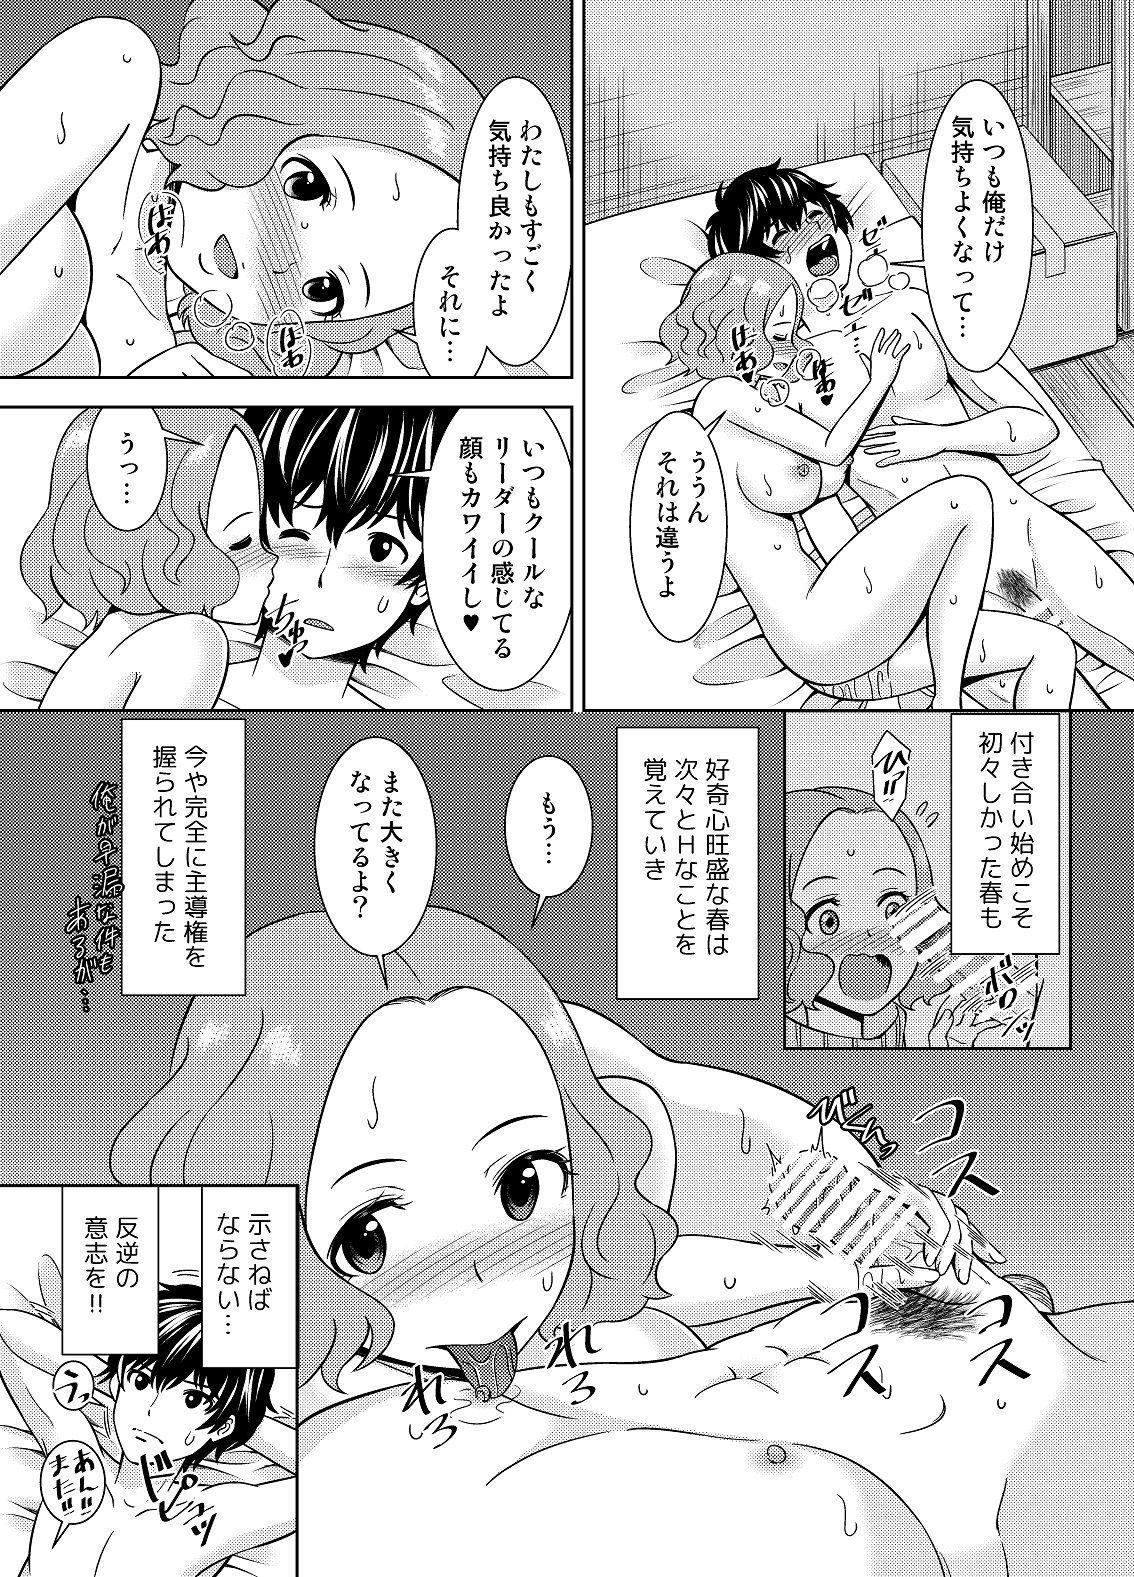 [Shikiouzi] Have Kokoro of the Haru (Persona 5) [Digital] page 5 full